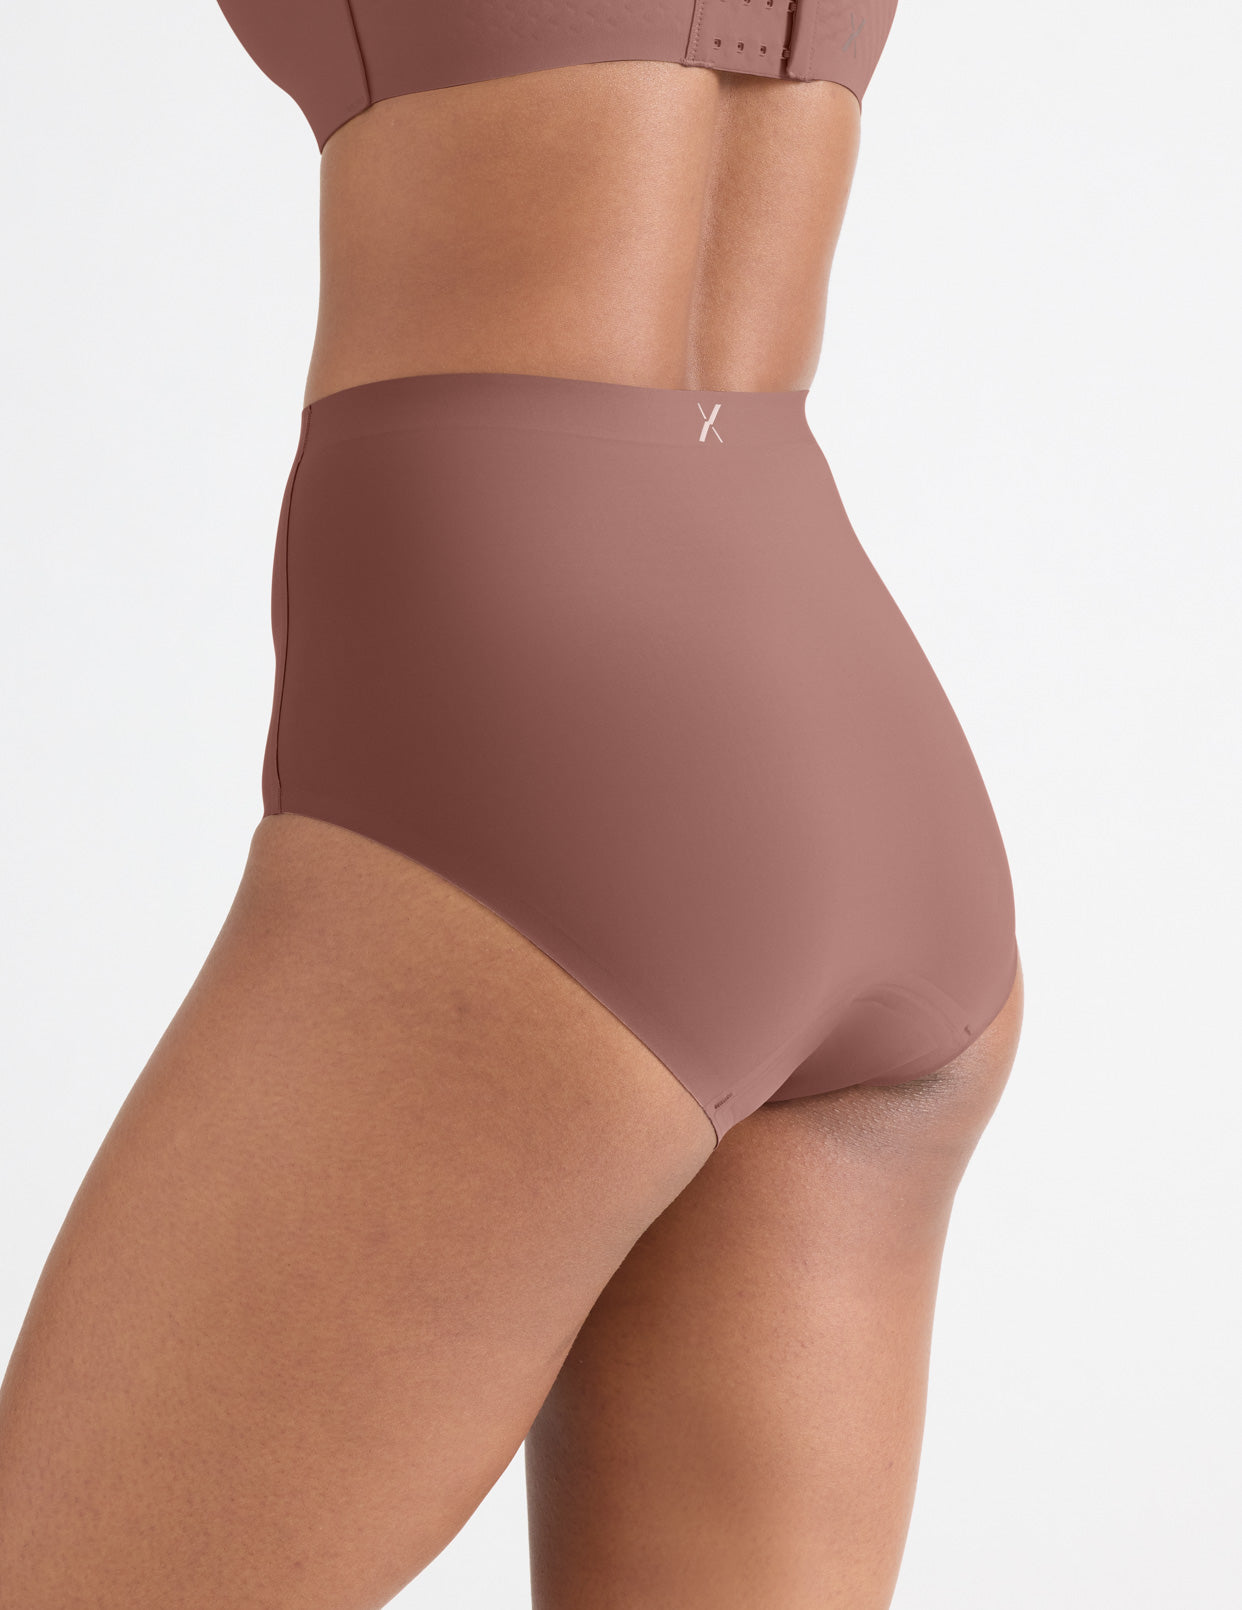  LEAKPROOF2.0 Seamless Brief Period Underwear for Women